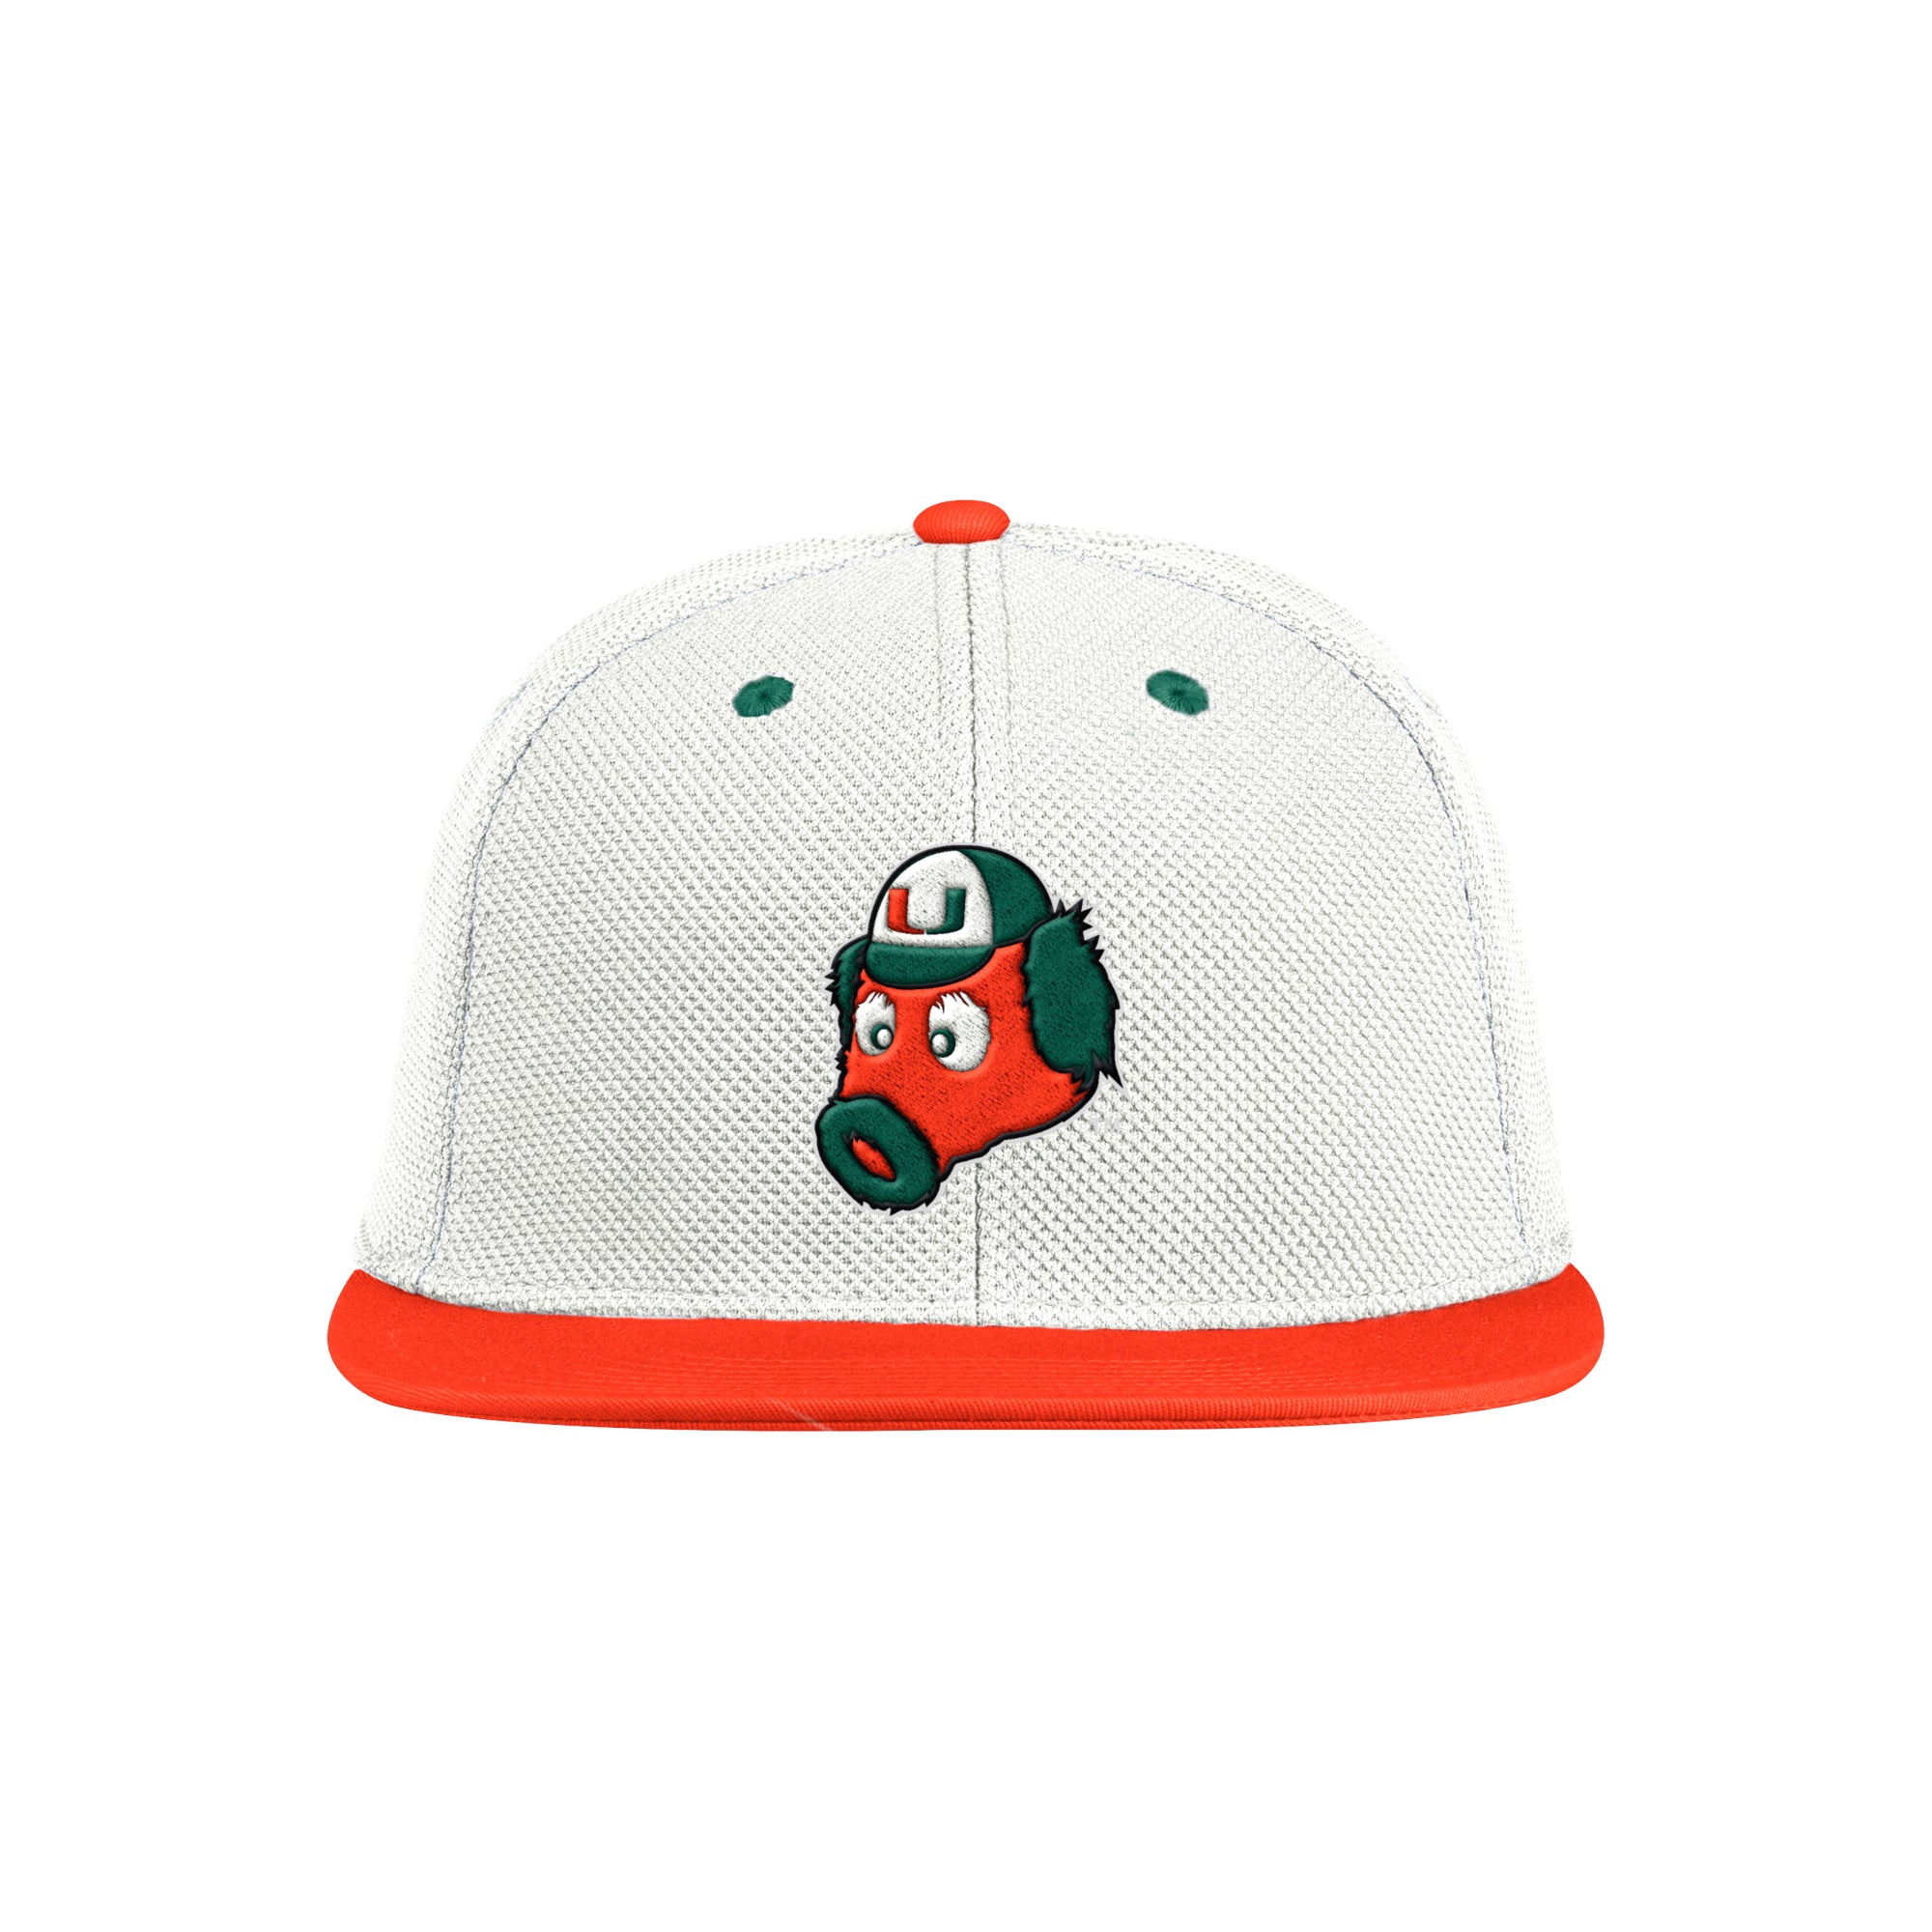 Miami Hurricanes adidas Miami Maniac On-Field Baseball Hat - White